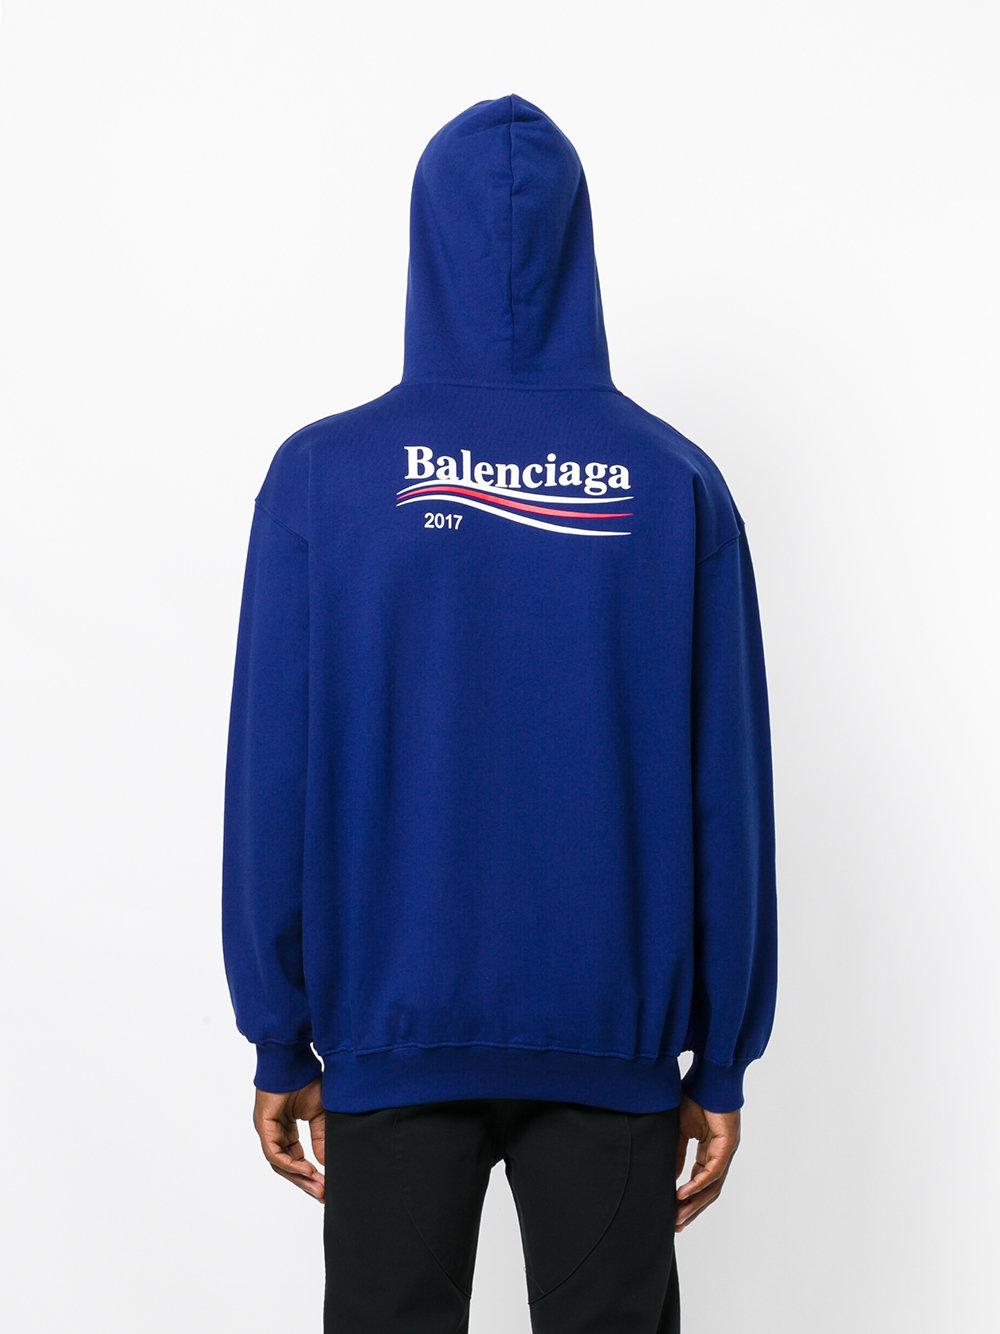 balenciaga 2017 campaign hoodie